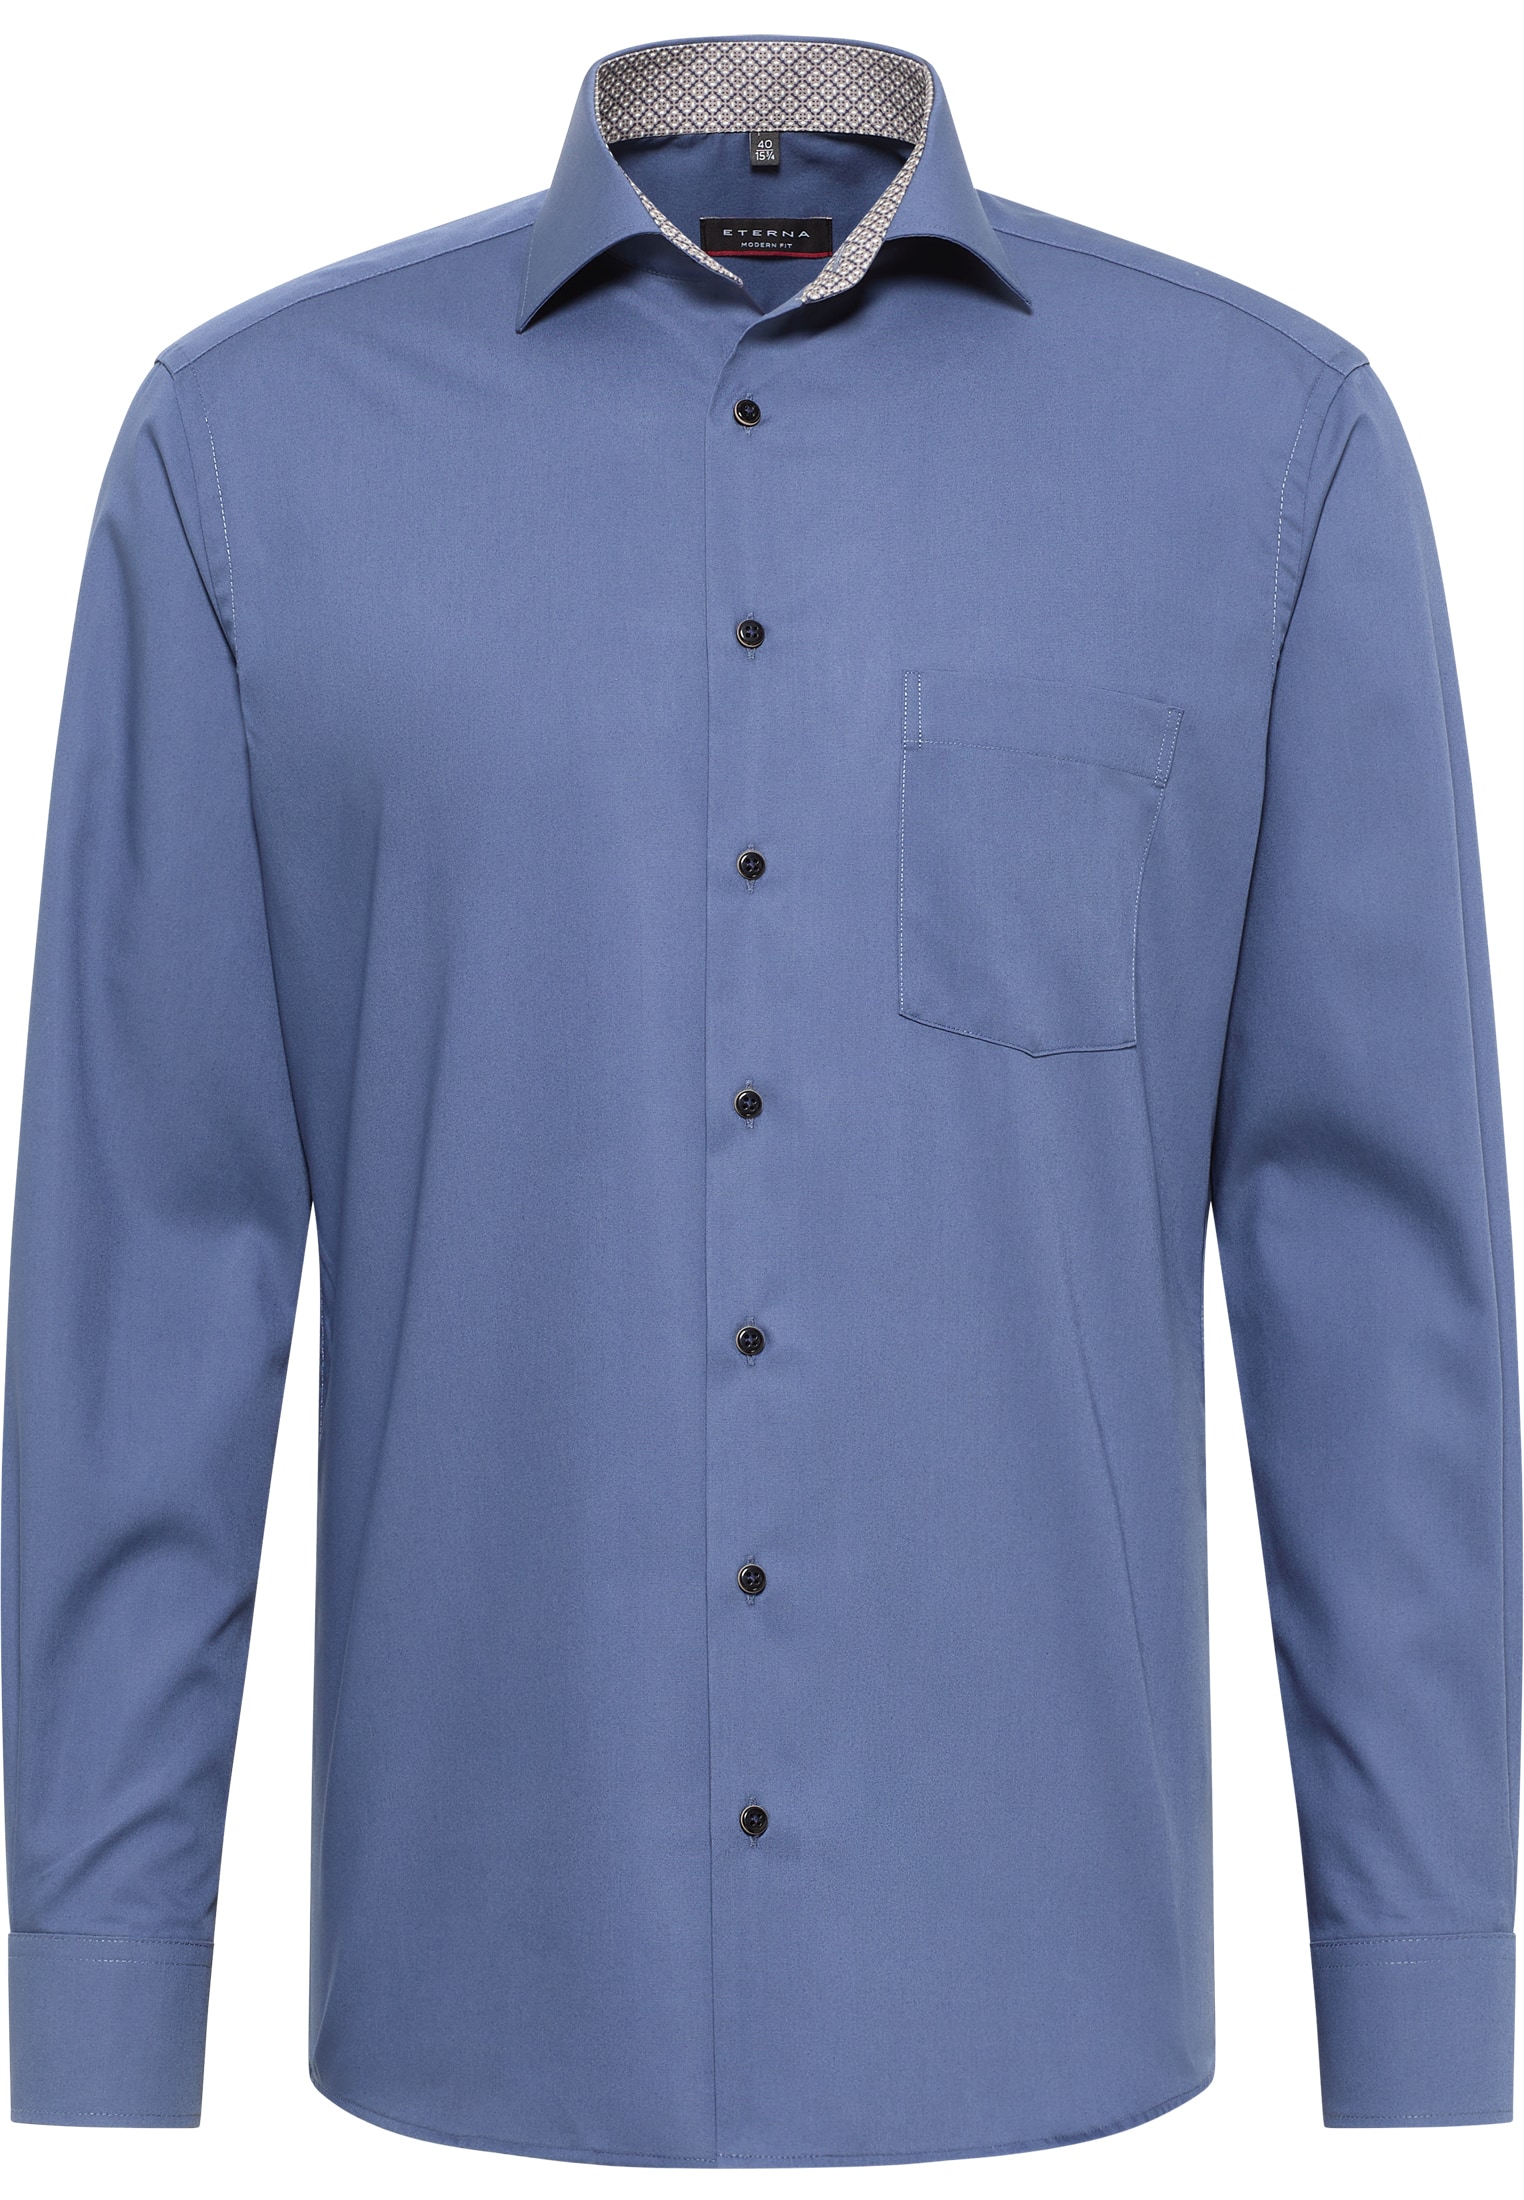 MODERN FIT Original Shirt rauchblau | 1SH11722-01-62-40-1/1 in unifarben | | Langarm 40 rauchblau 